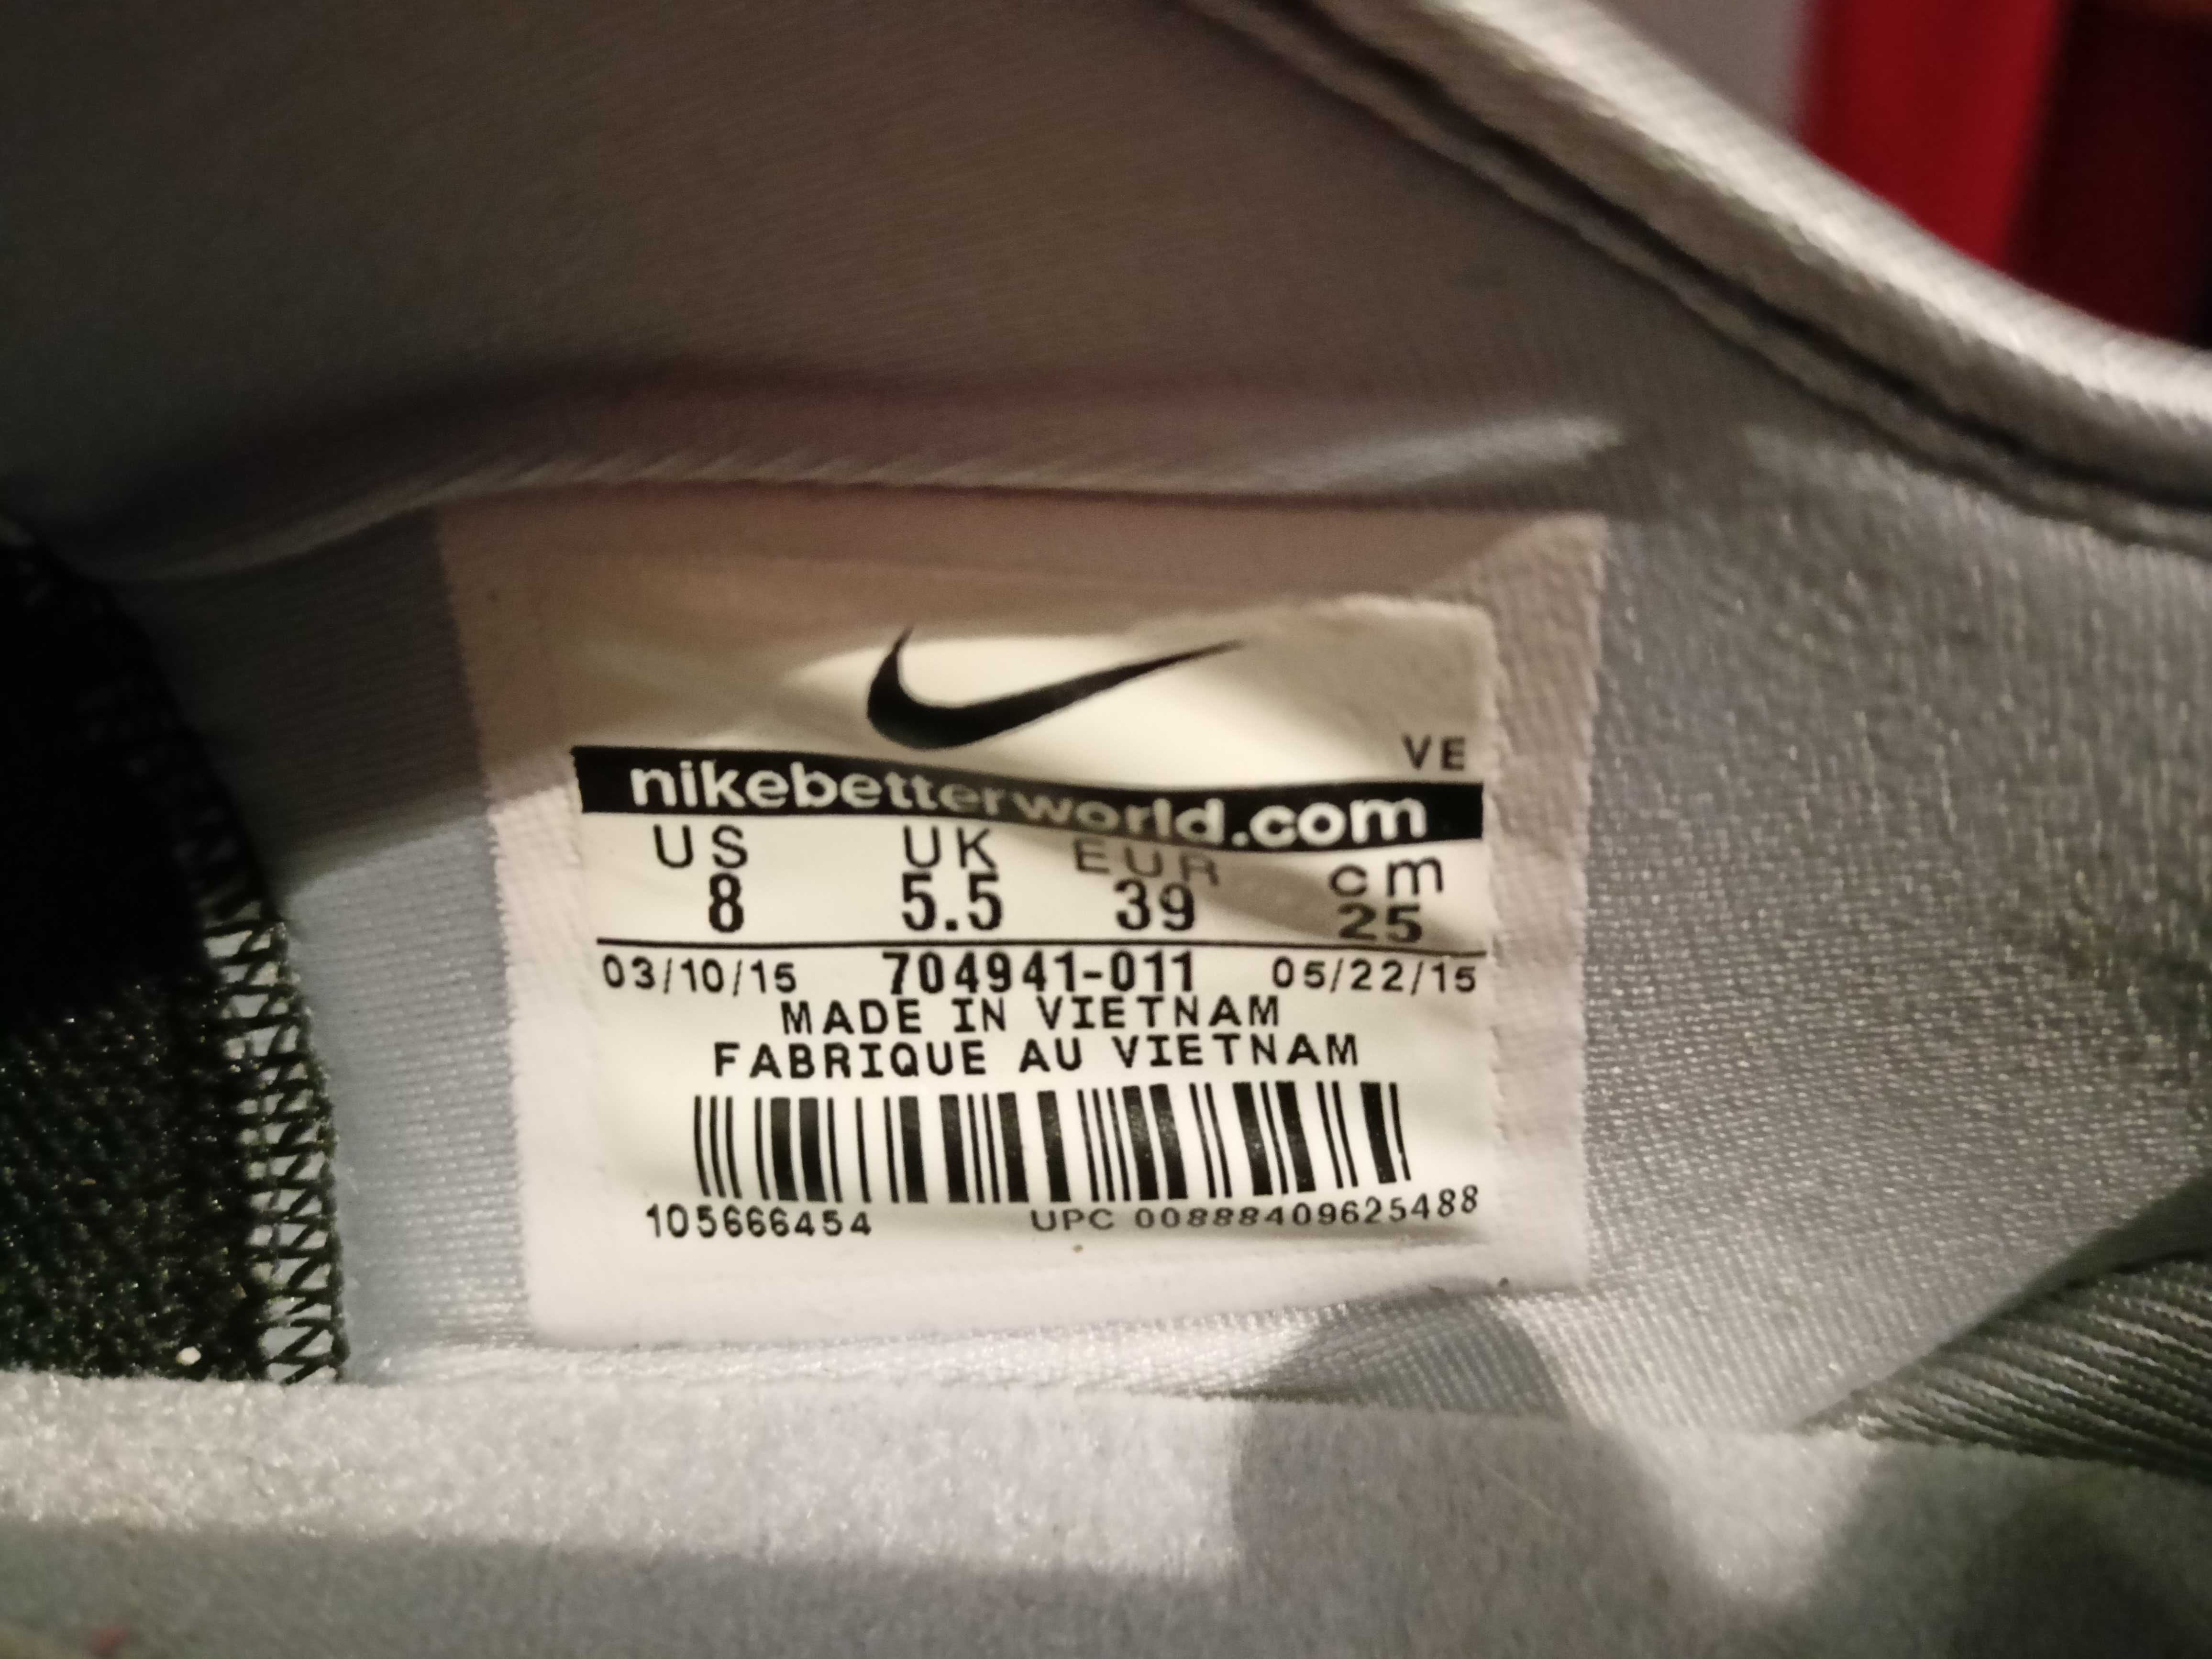 Buty Nike Dual Fusion TR 3 Print. Rozmiar UK 5,5, CM 25cm, EUR 39